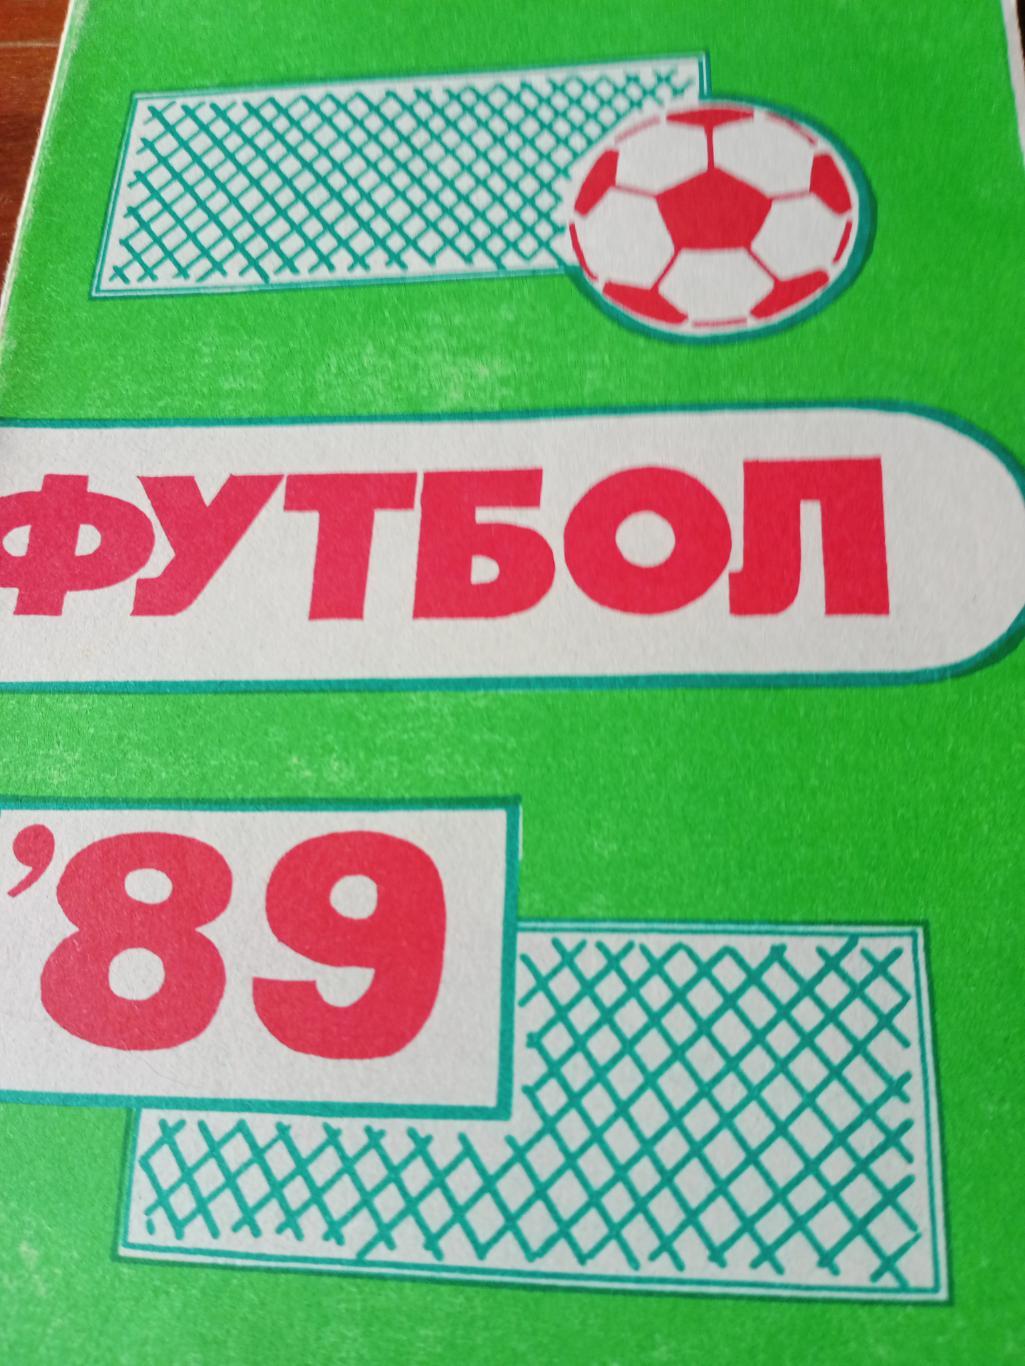 Футбол. Пермь. 1989 год